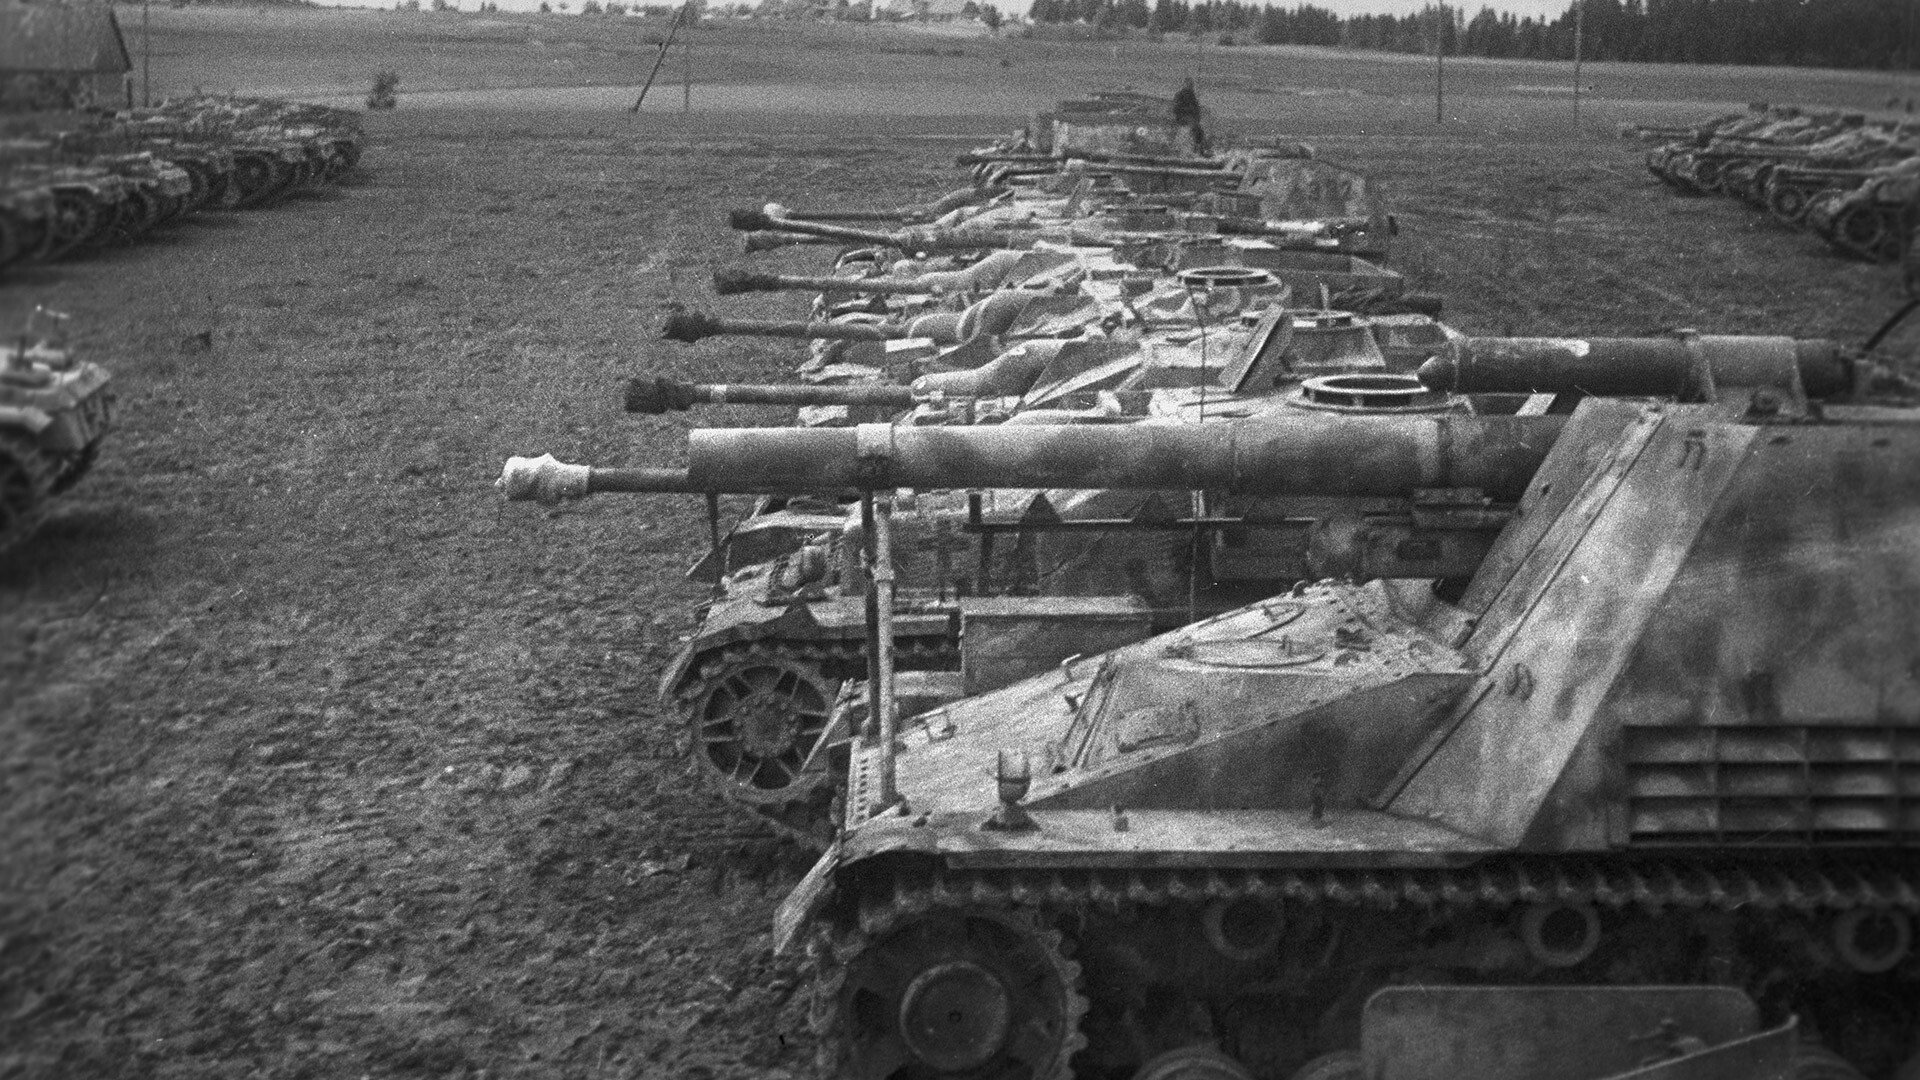 Velika domovinska vojna v letih 1941-1945. Konec Kurlandske grupacije Nemcev. Nemške samovozne artilerijske enote - trofeje sovjetskih vojakov